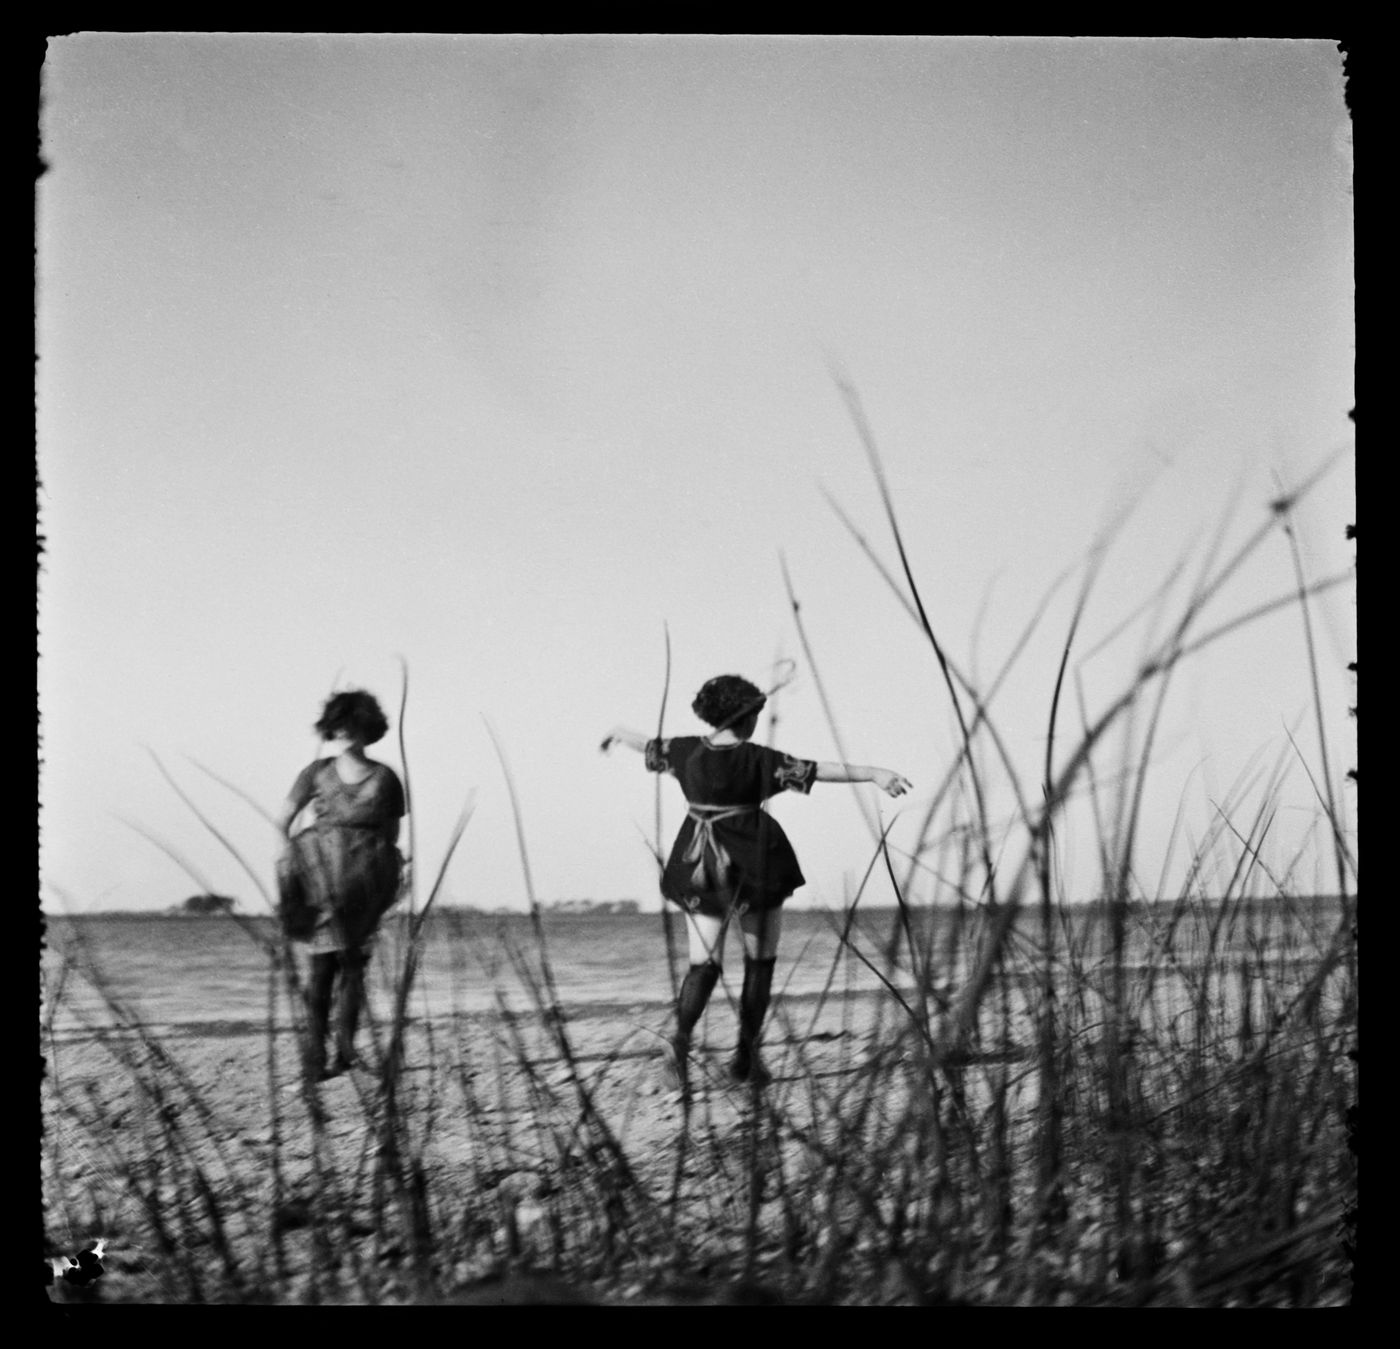 Portrait de deux femmes non identifiées, possiblement Clorinthe et Cécile Perron, près de la rive d'une étendue d'eau